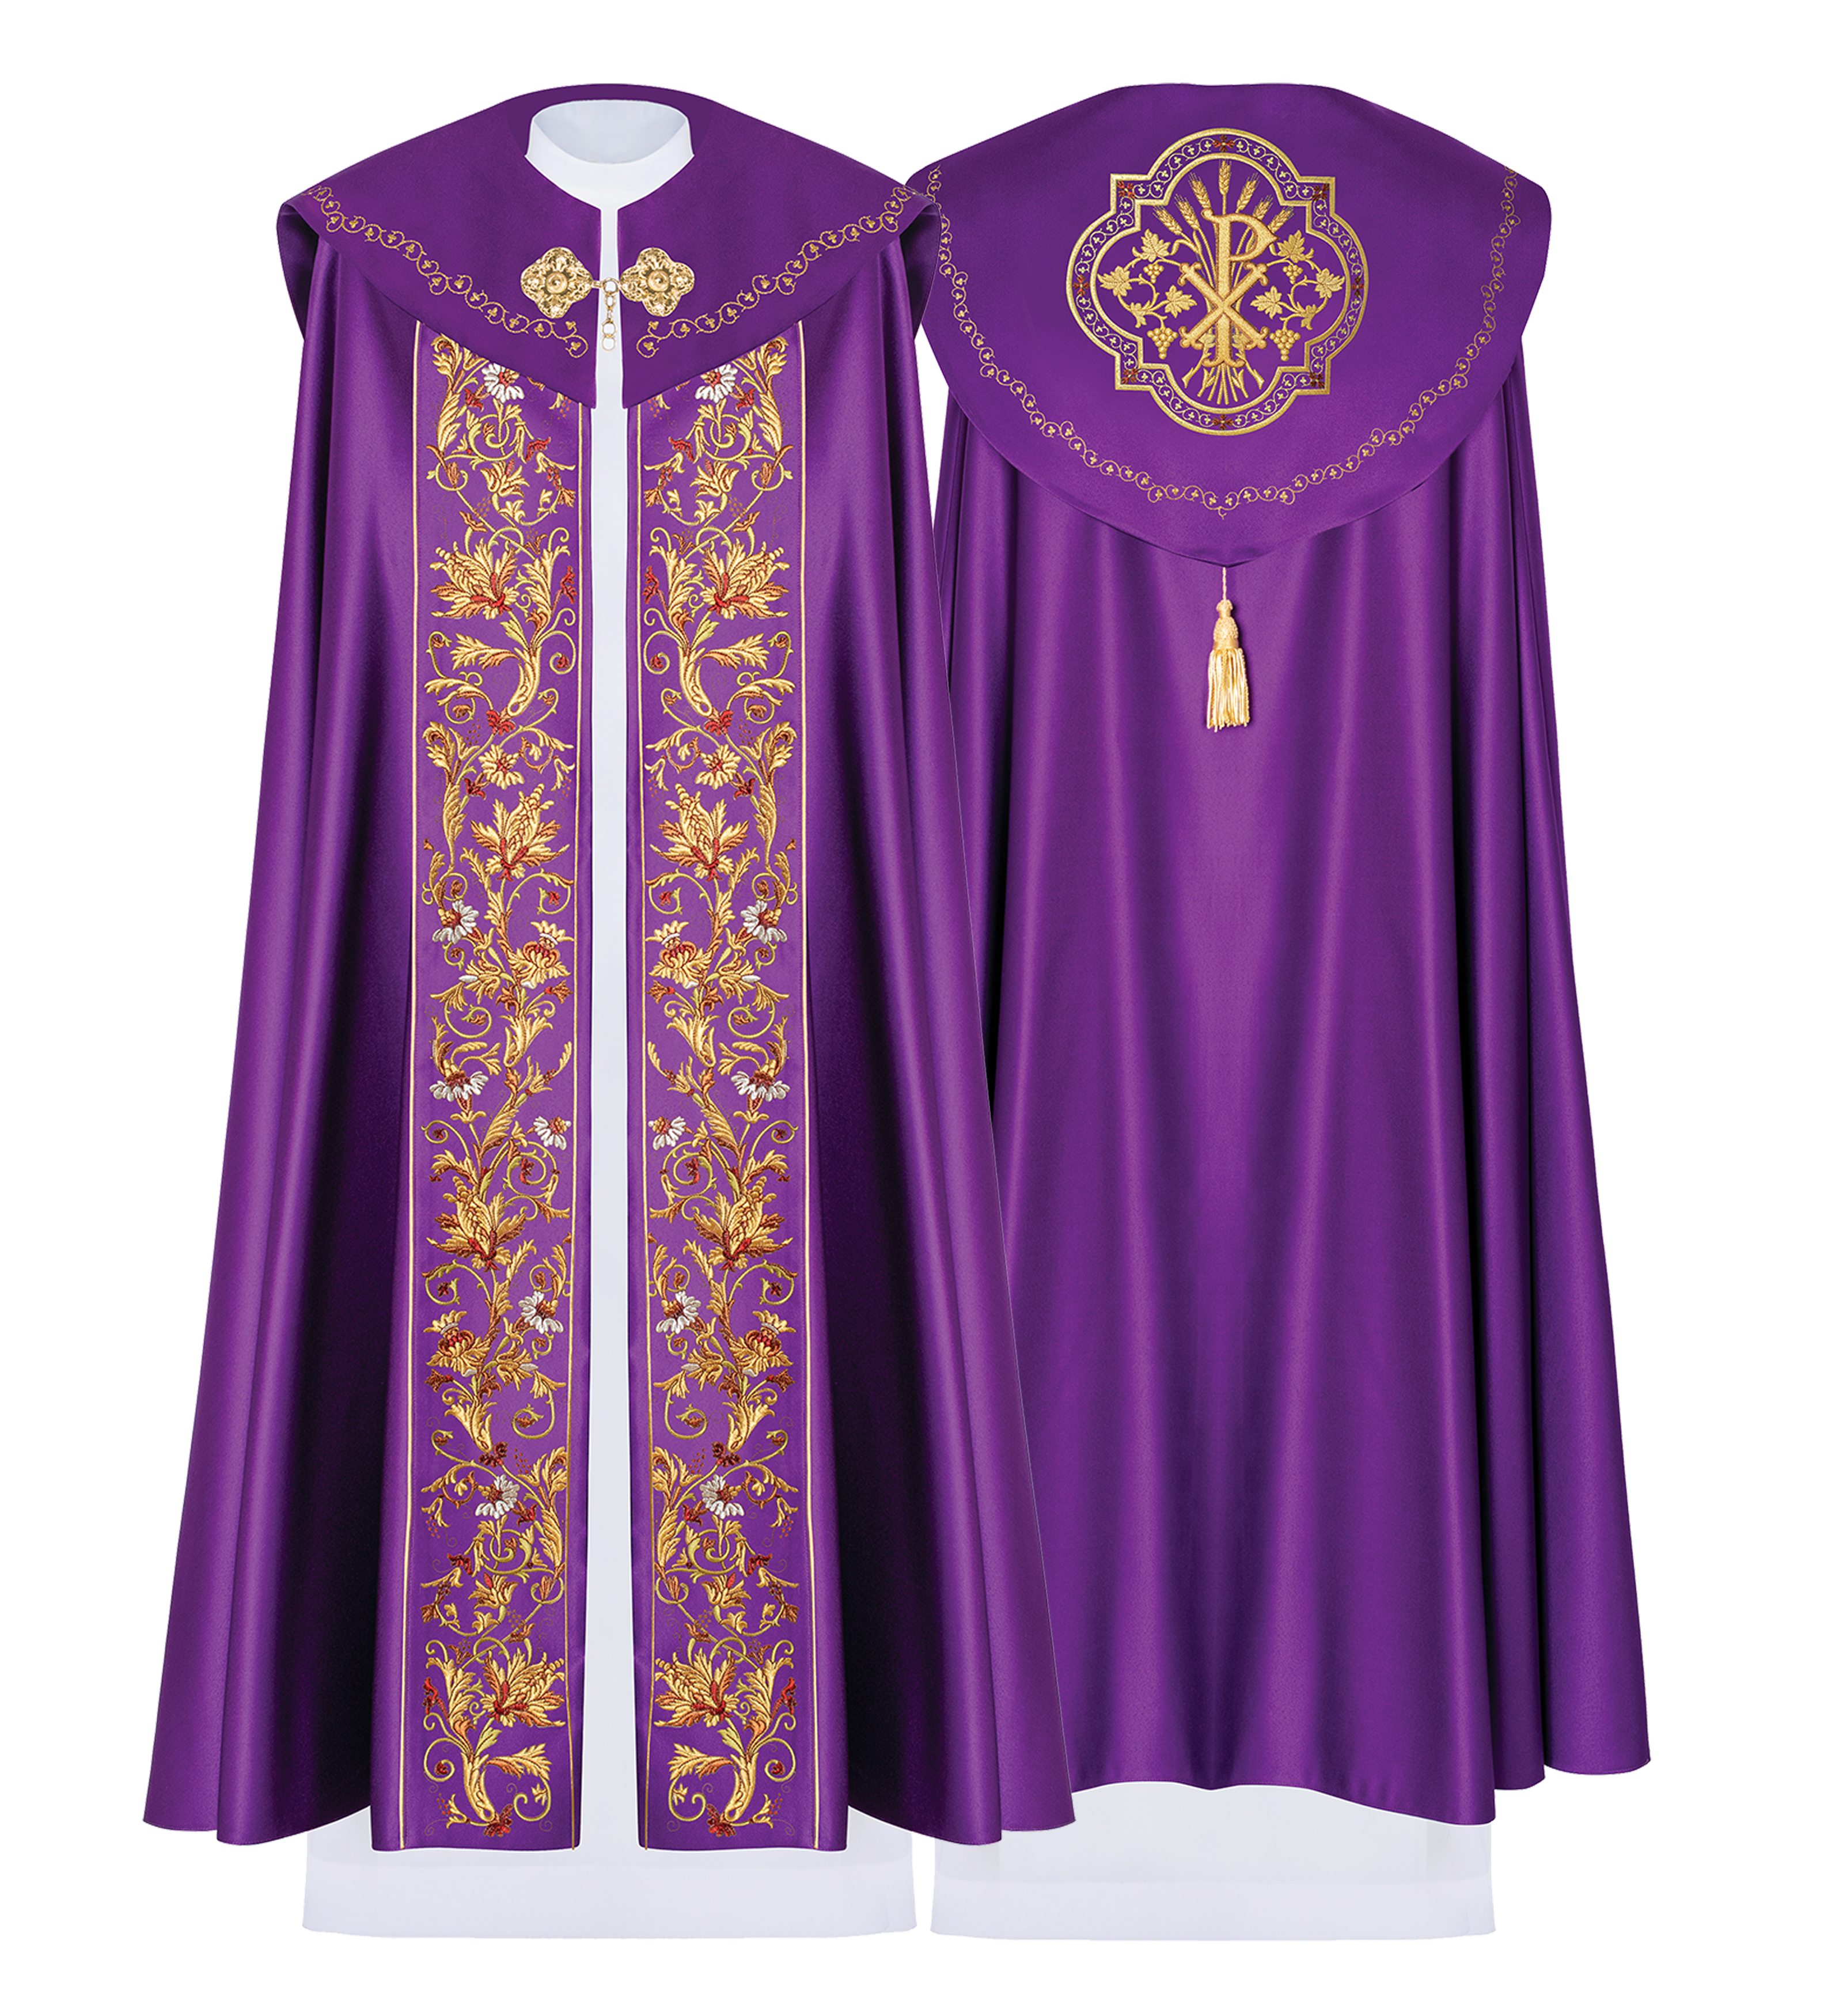 Eucharistic cape monogram PX in purple